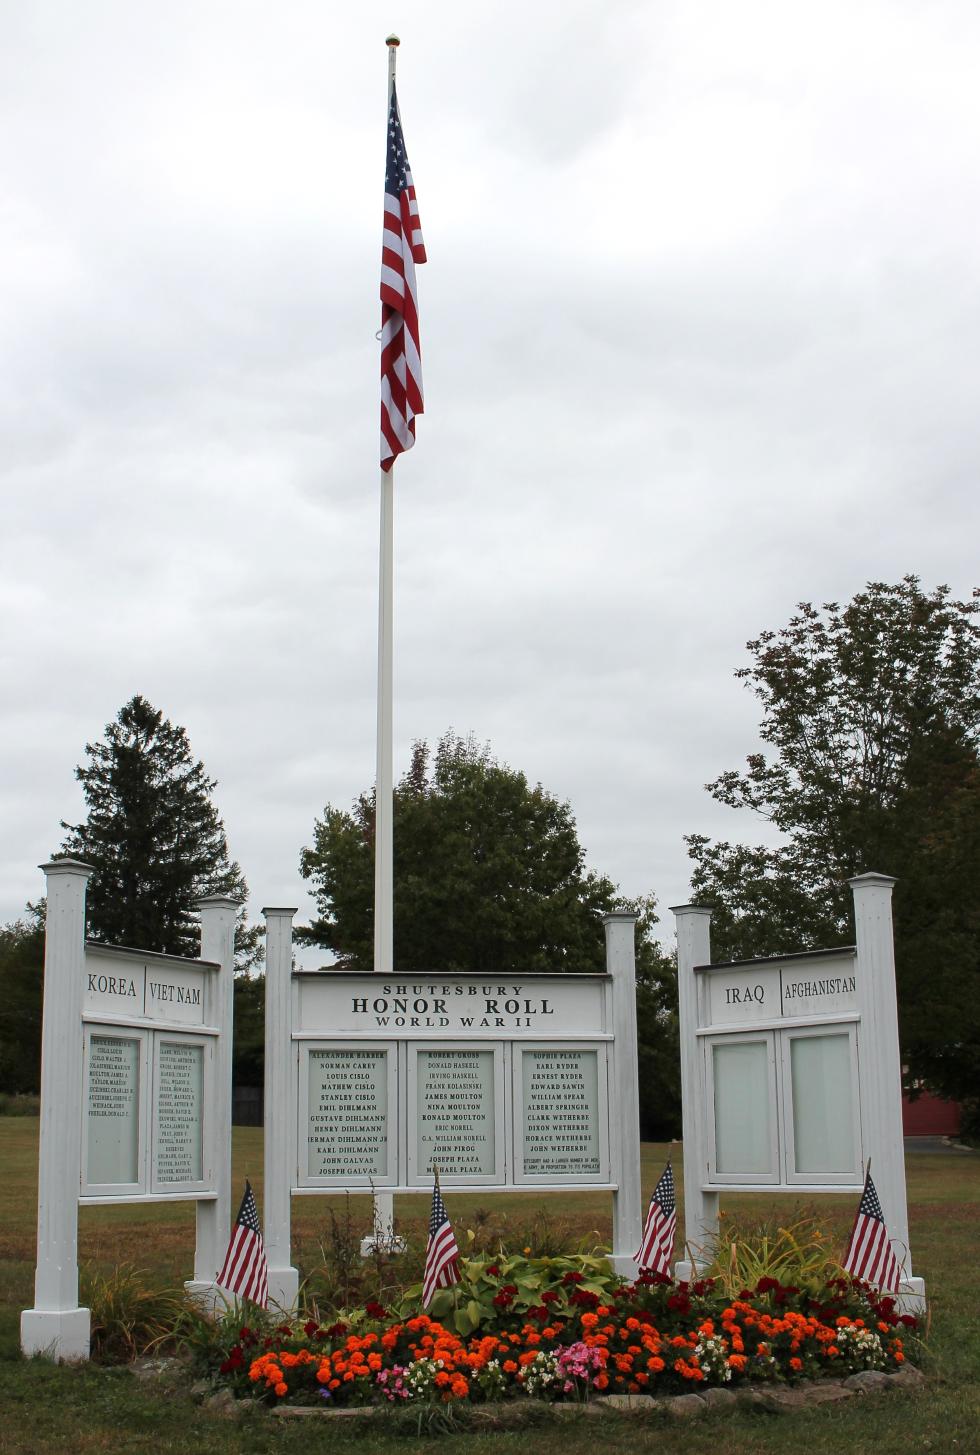 Shutesbury Massachusetts Veterans Memorial Park